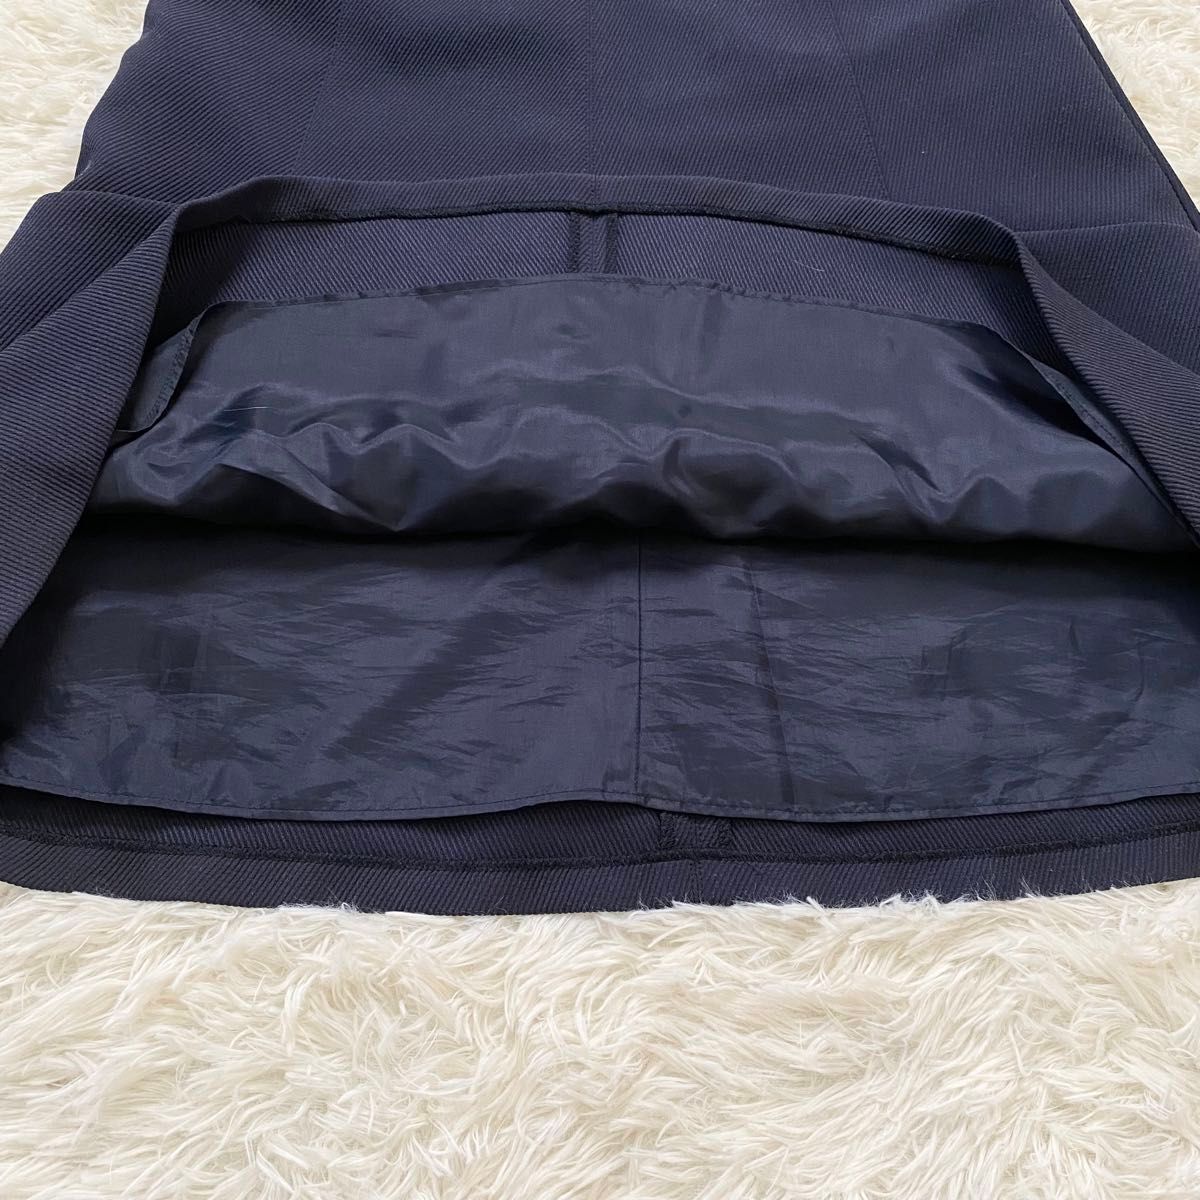 【IENA】ジャンパースカート ワンピース ネイビー Mサイズ 日本製